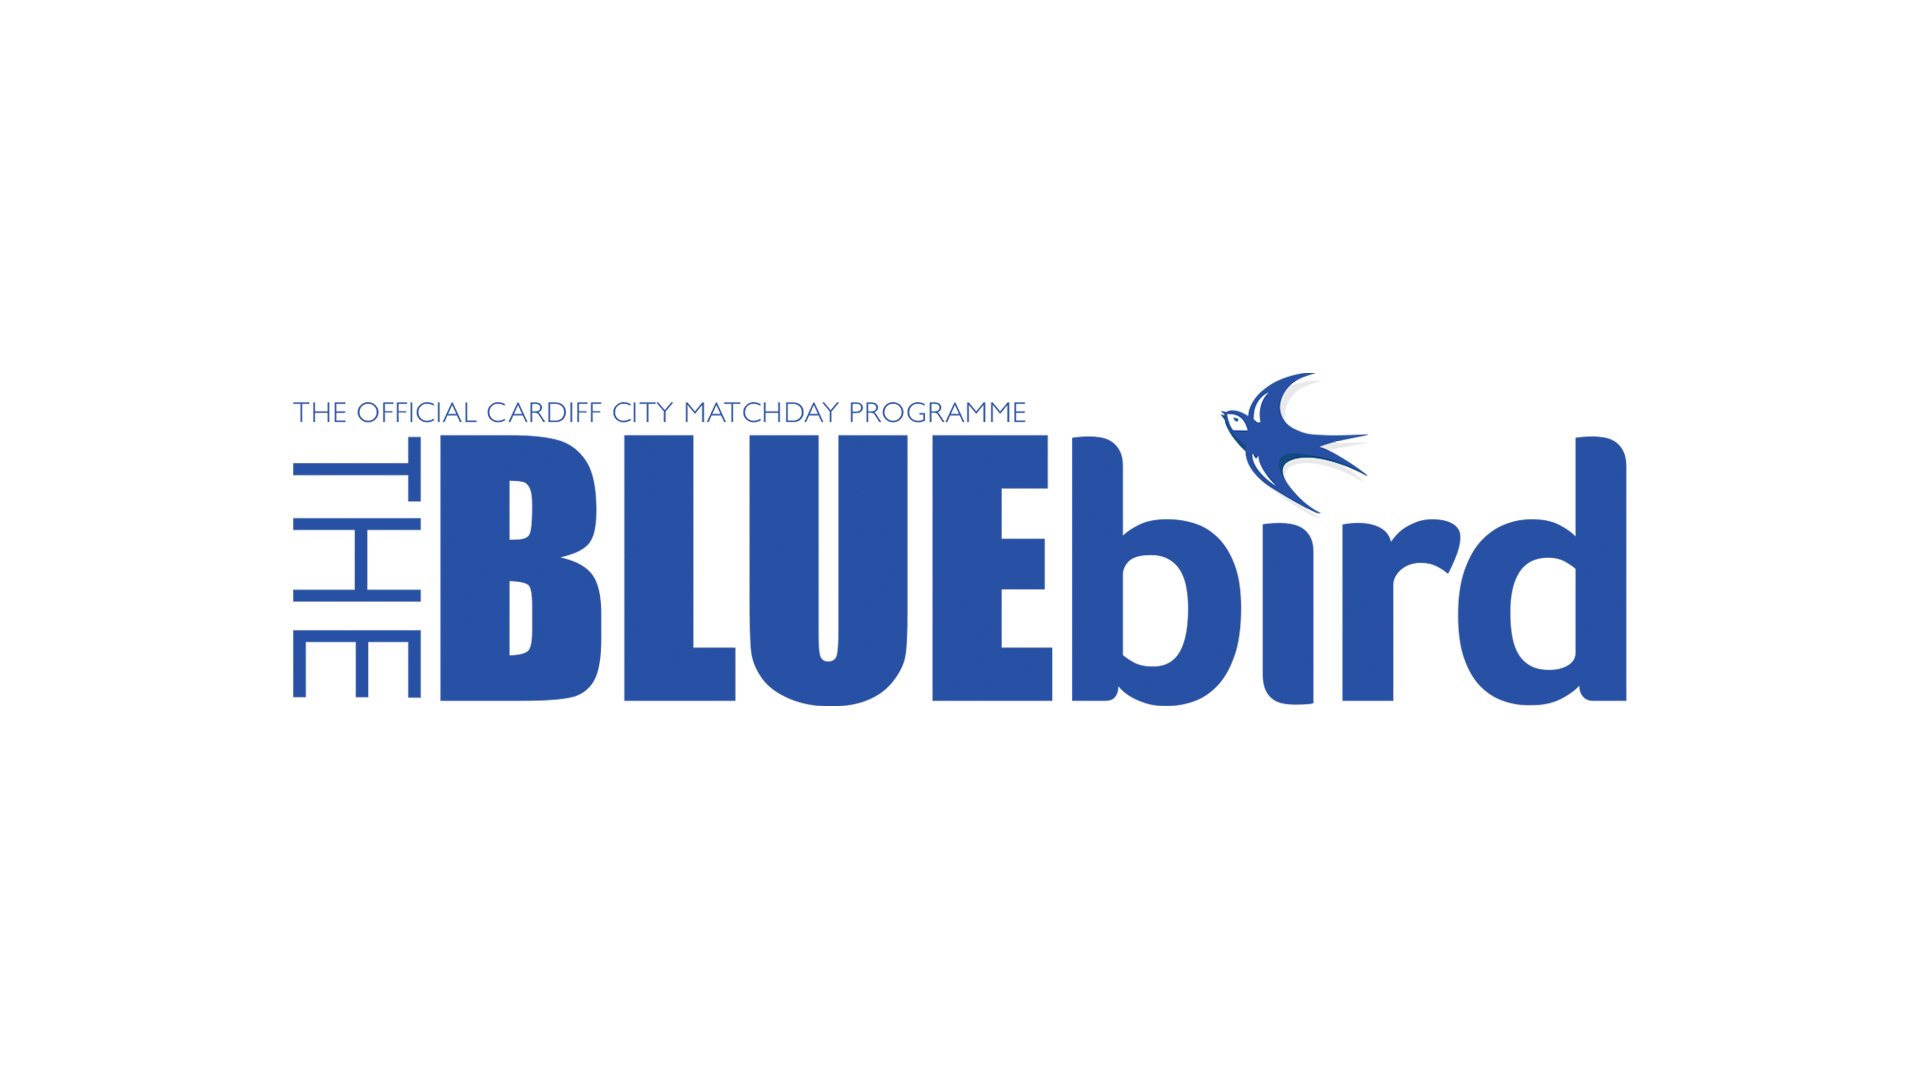 The Bluebird - official matchday programme...